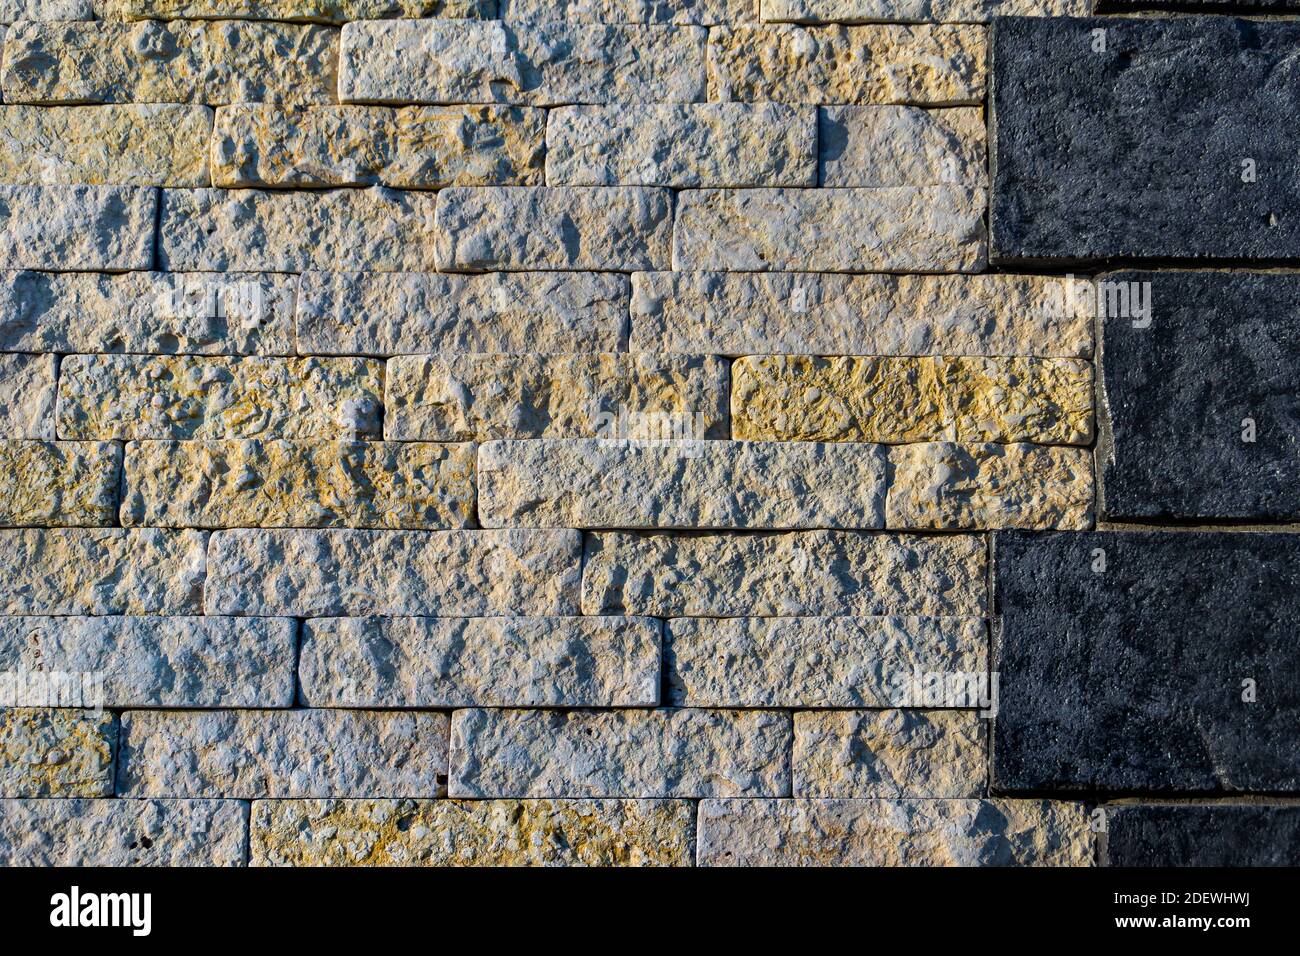 l'unione di pareti in pietra di due diversi tipi di pietra - scura e chiara, di grandi e medie dimensioni Foto Stock